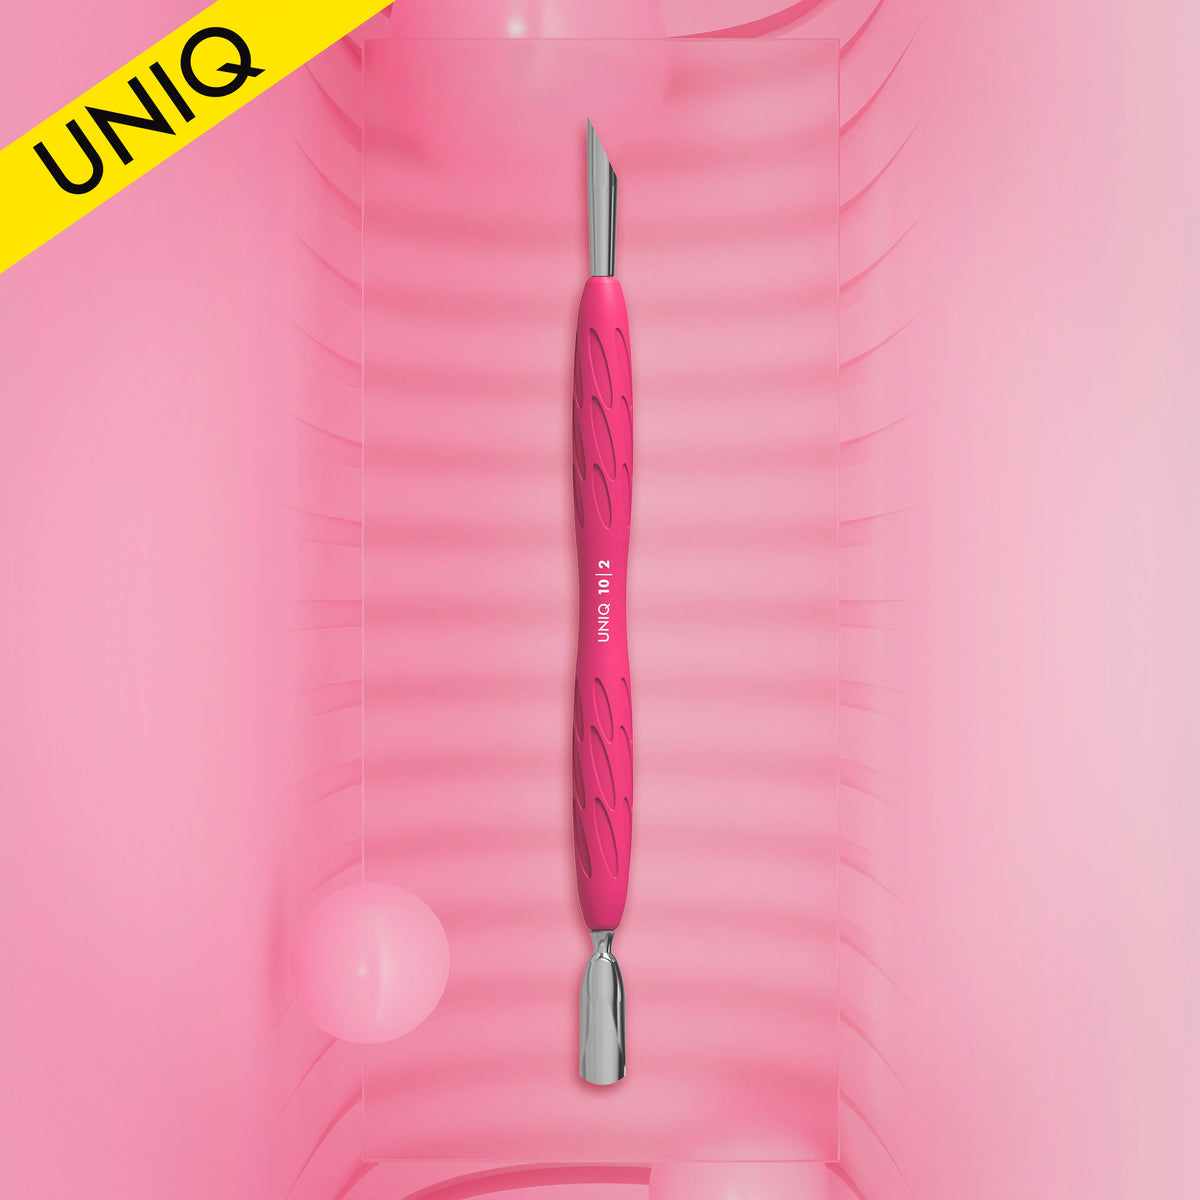 Manicure pusher with silicone handle "Gummy" UNIQ 10 TYPE 2 (narrow rounded pusher + slanted pusher)